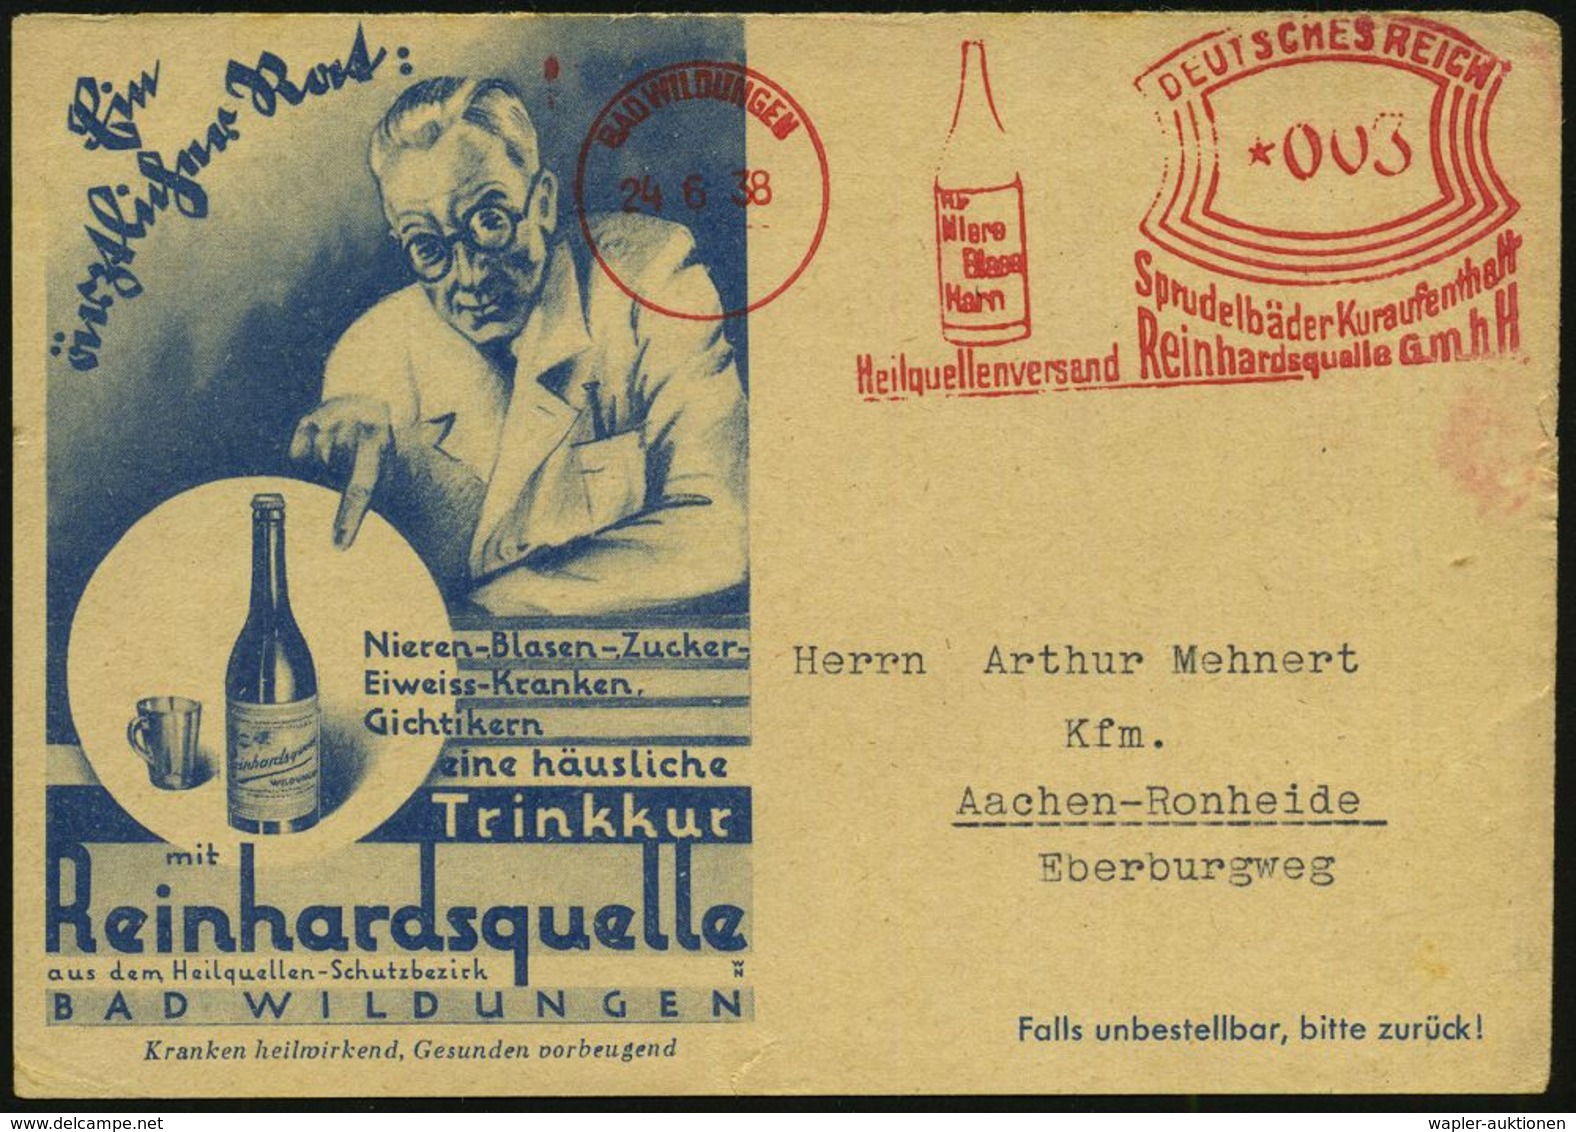 KURORTE / HEILQUELLEN : BAD WILDUNGEN/ Sprudelbäder../ Heilquellenversand Reinhardsquelle GmbH 1938 (24.6.) AFS  = Heilq - Medicine